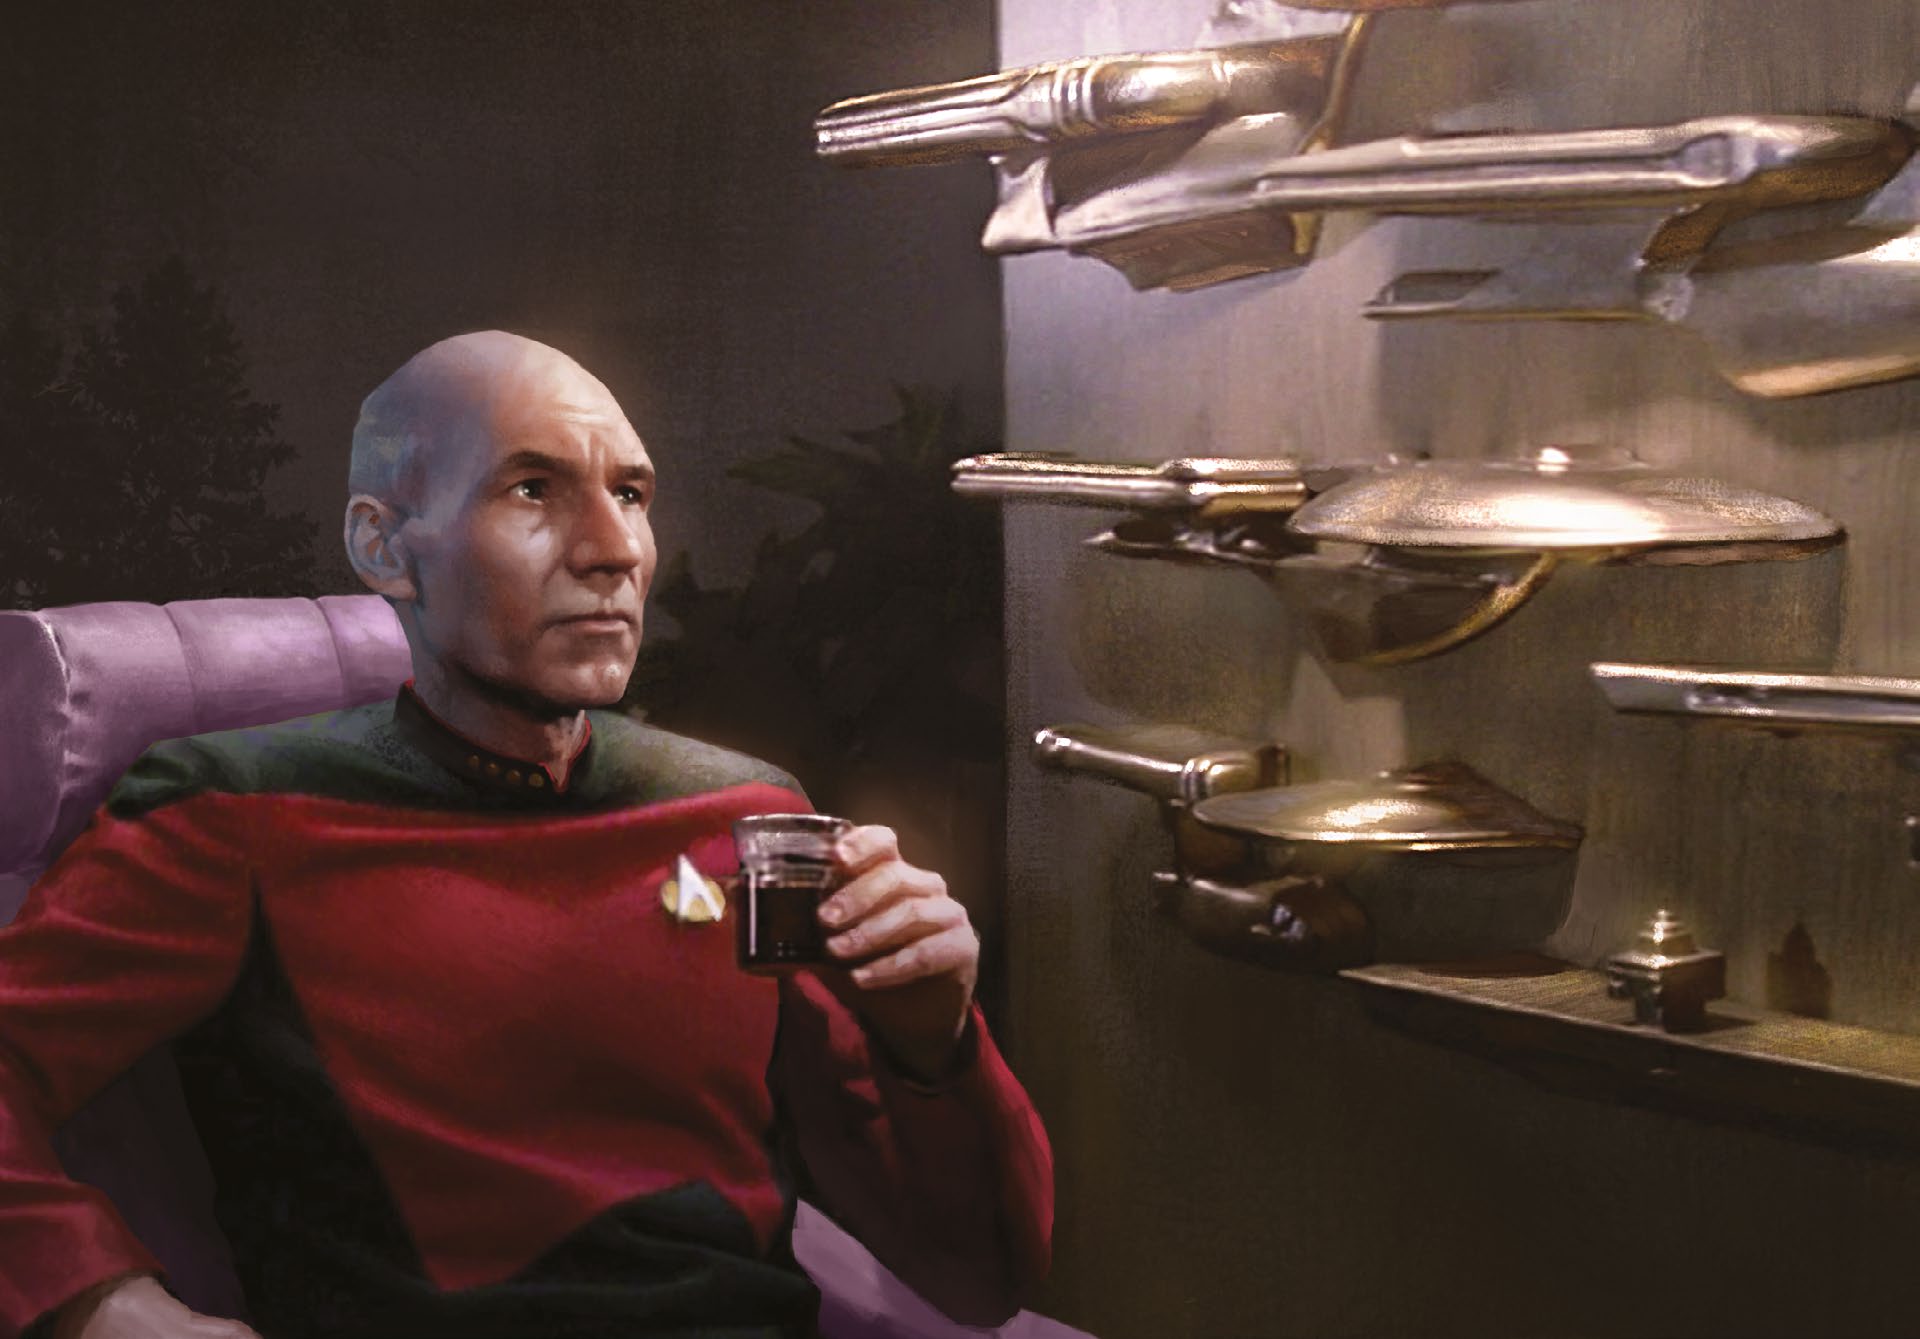 Picard in "Star Trek Adventures"